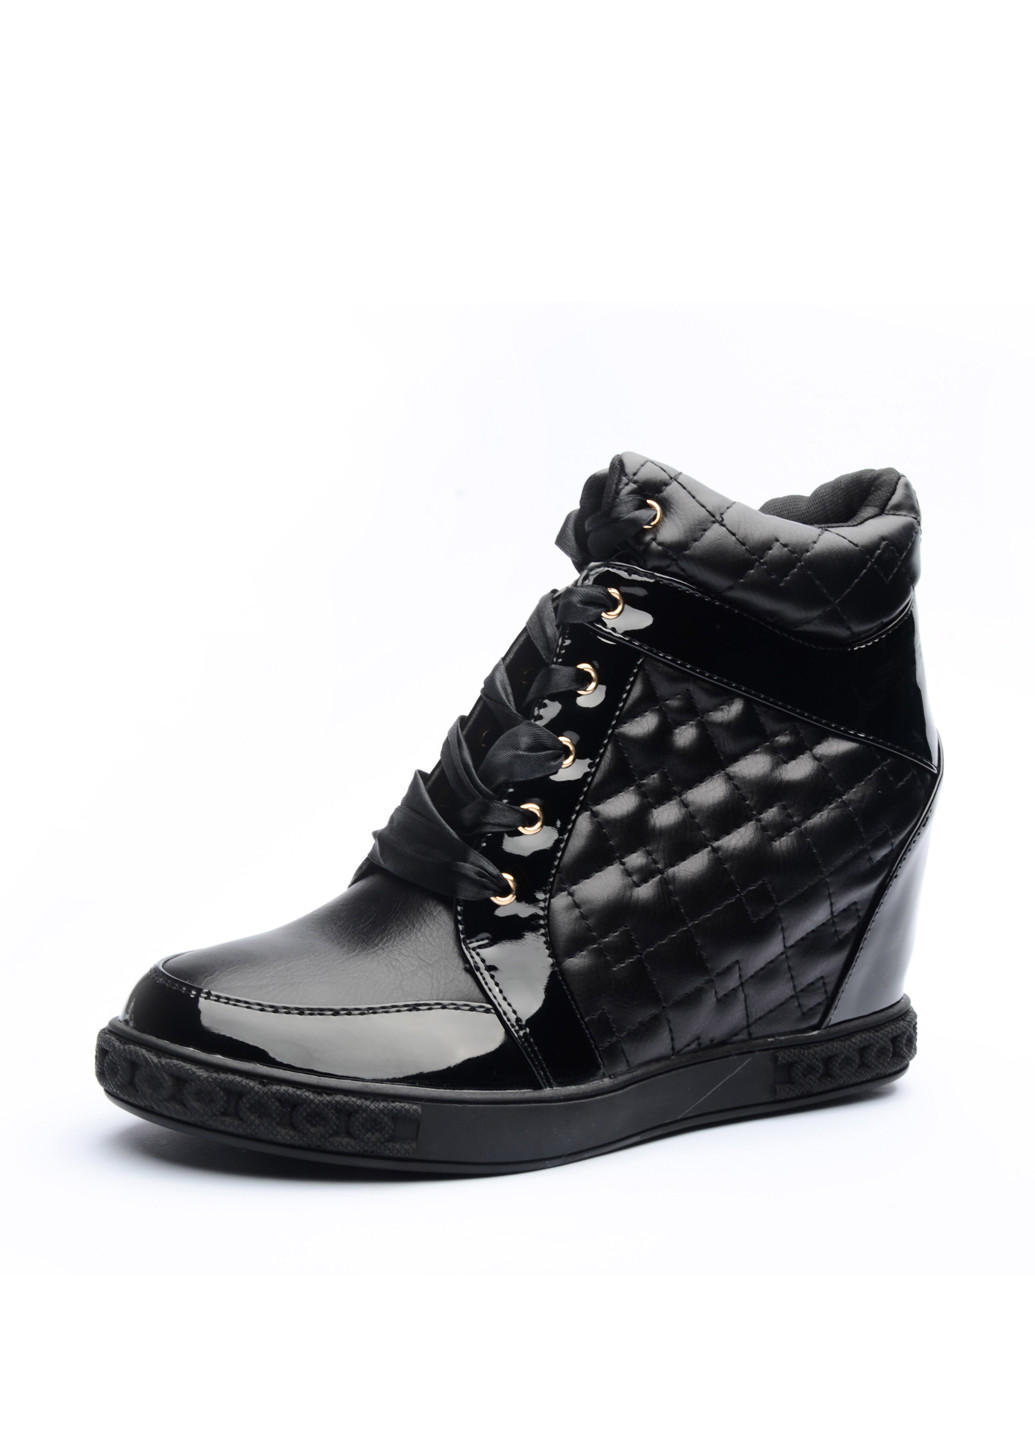 Осенние ботинки сникерсы Top Shoes со шнуровкой из искусственной кожи